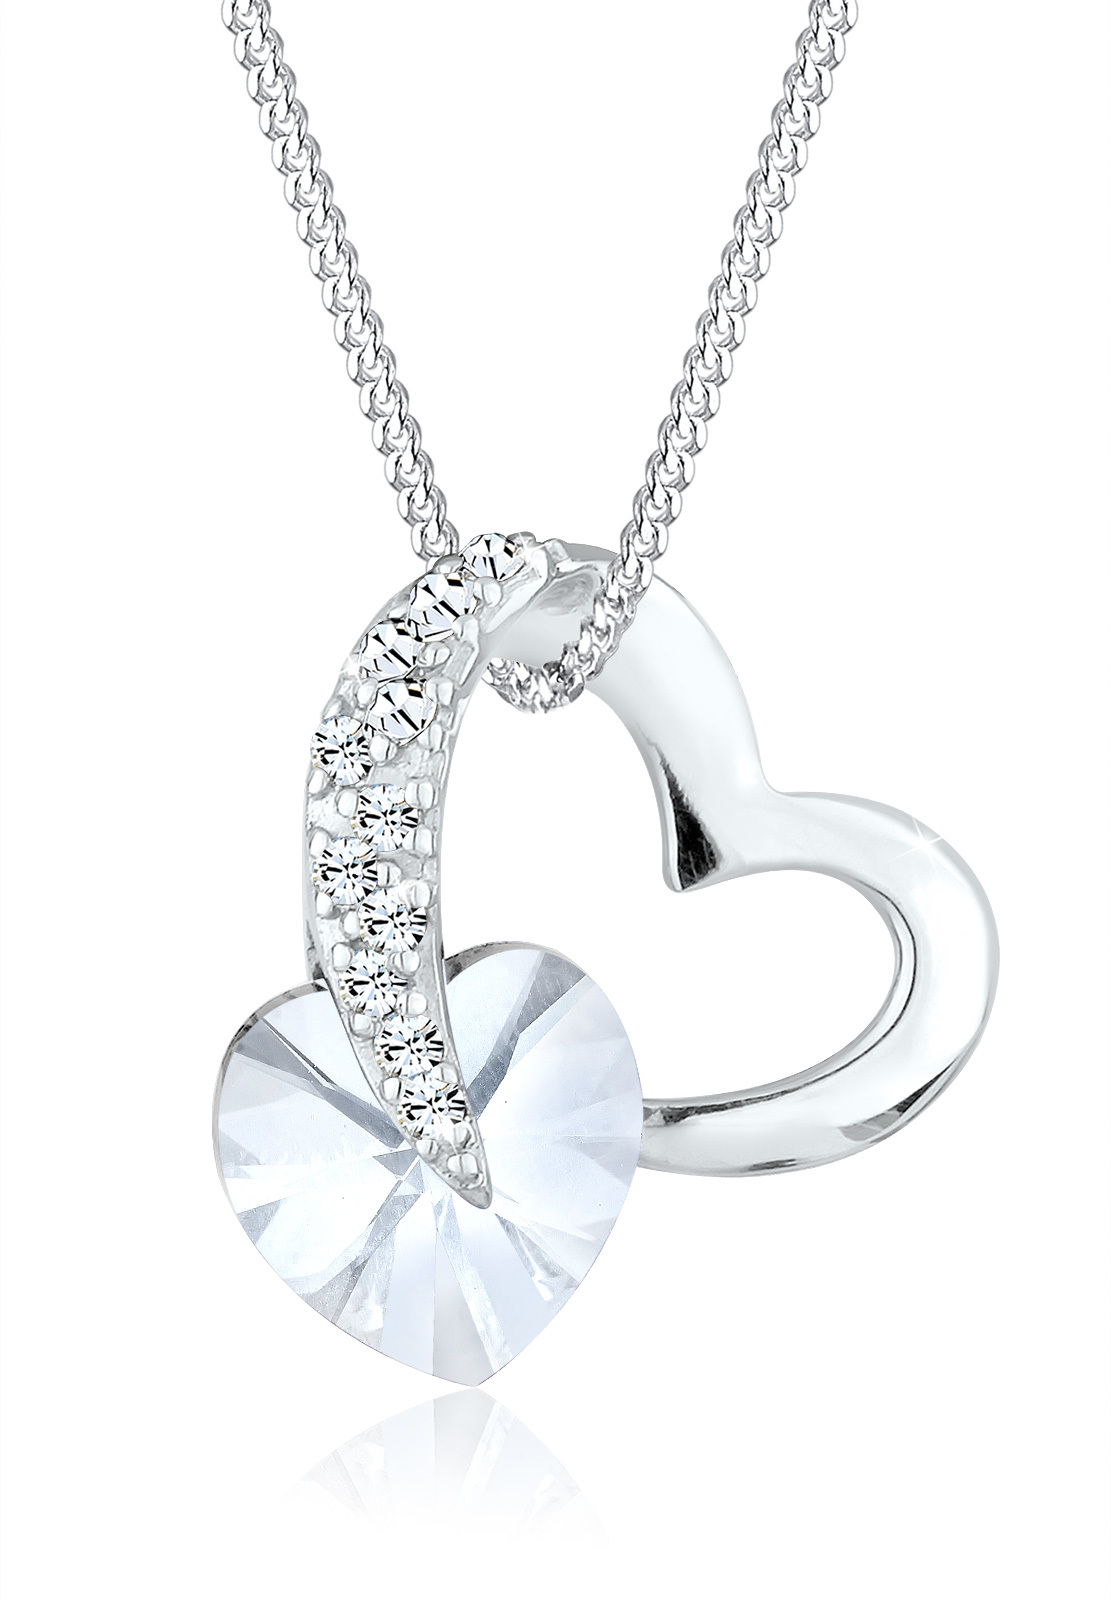 Halskette Herz | Kristall ( Weiß ) | 925er Sterling Silber